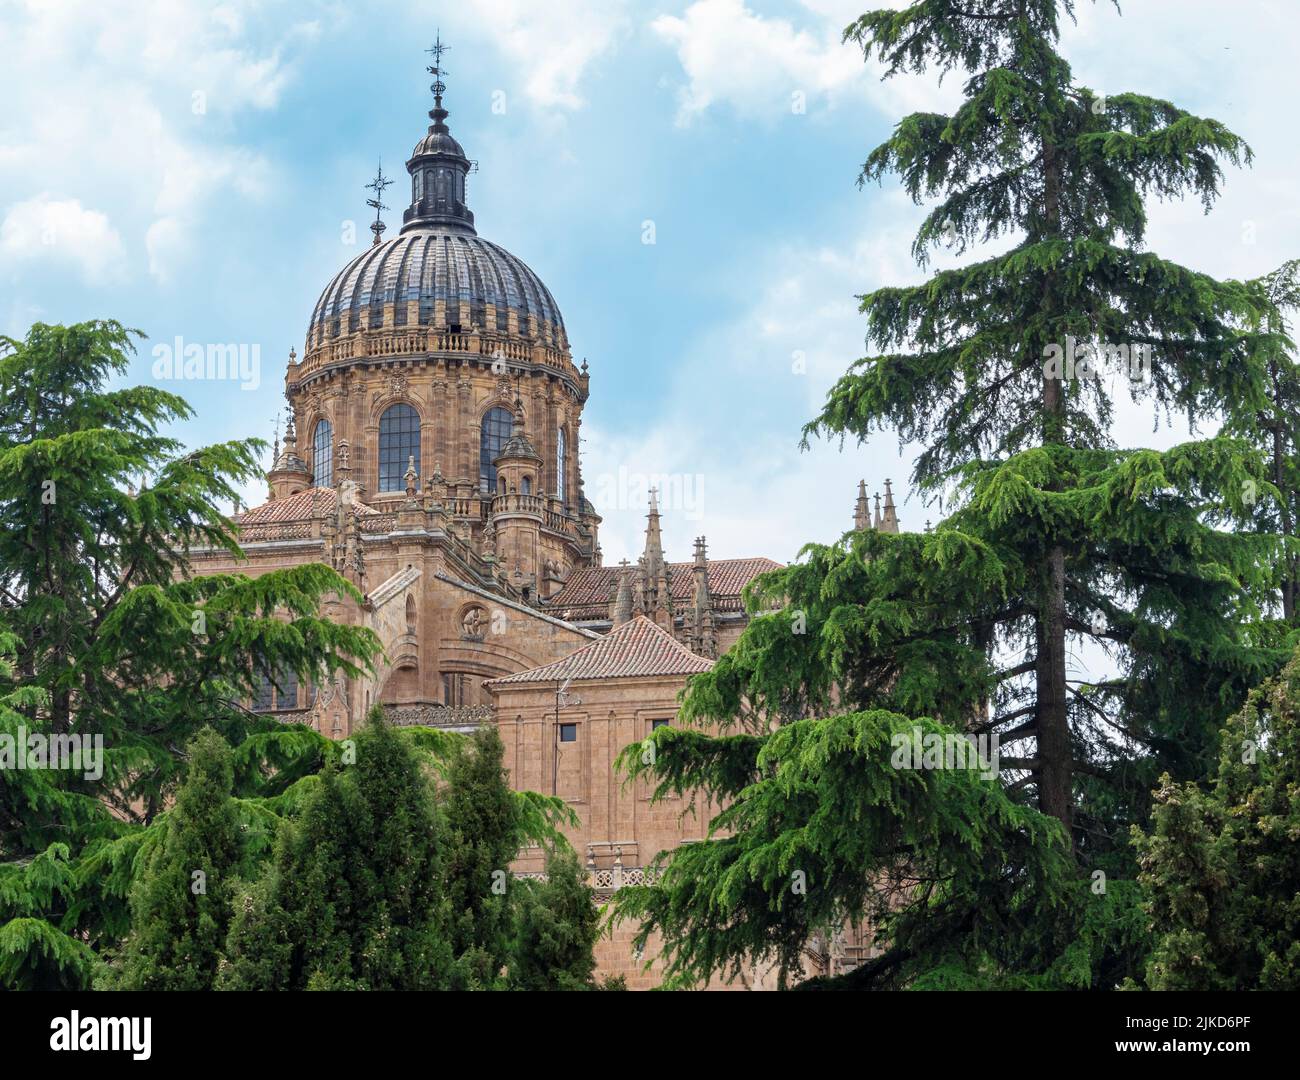 La majestueuse cathédrale gothique du XVIe siècle de Salamanque, Espagne Banque D'Images